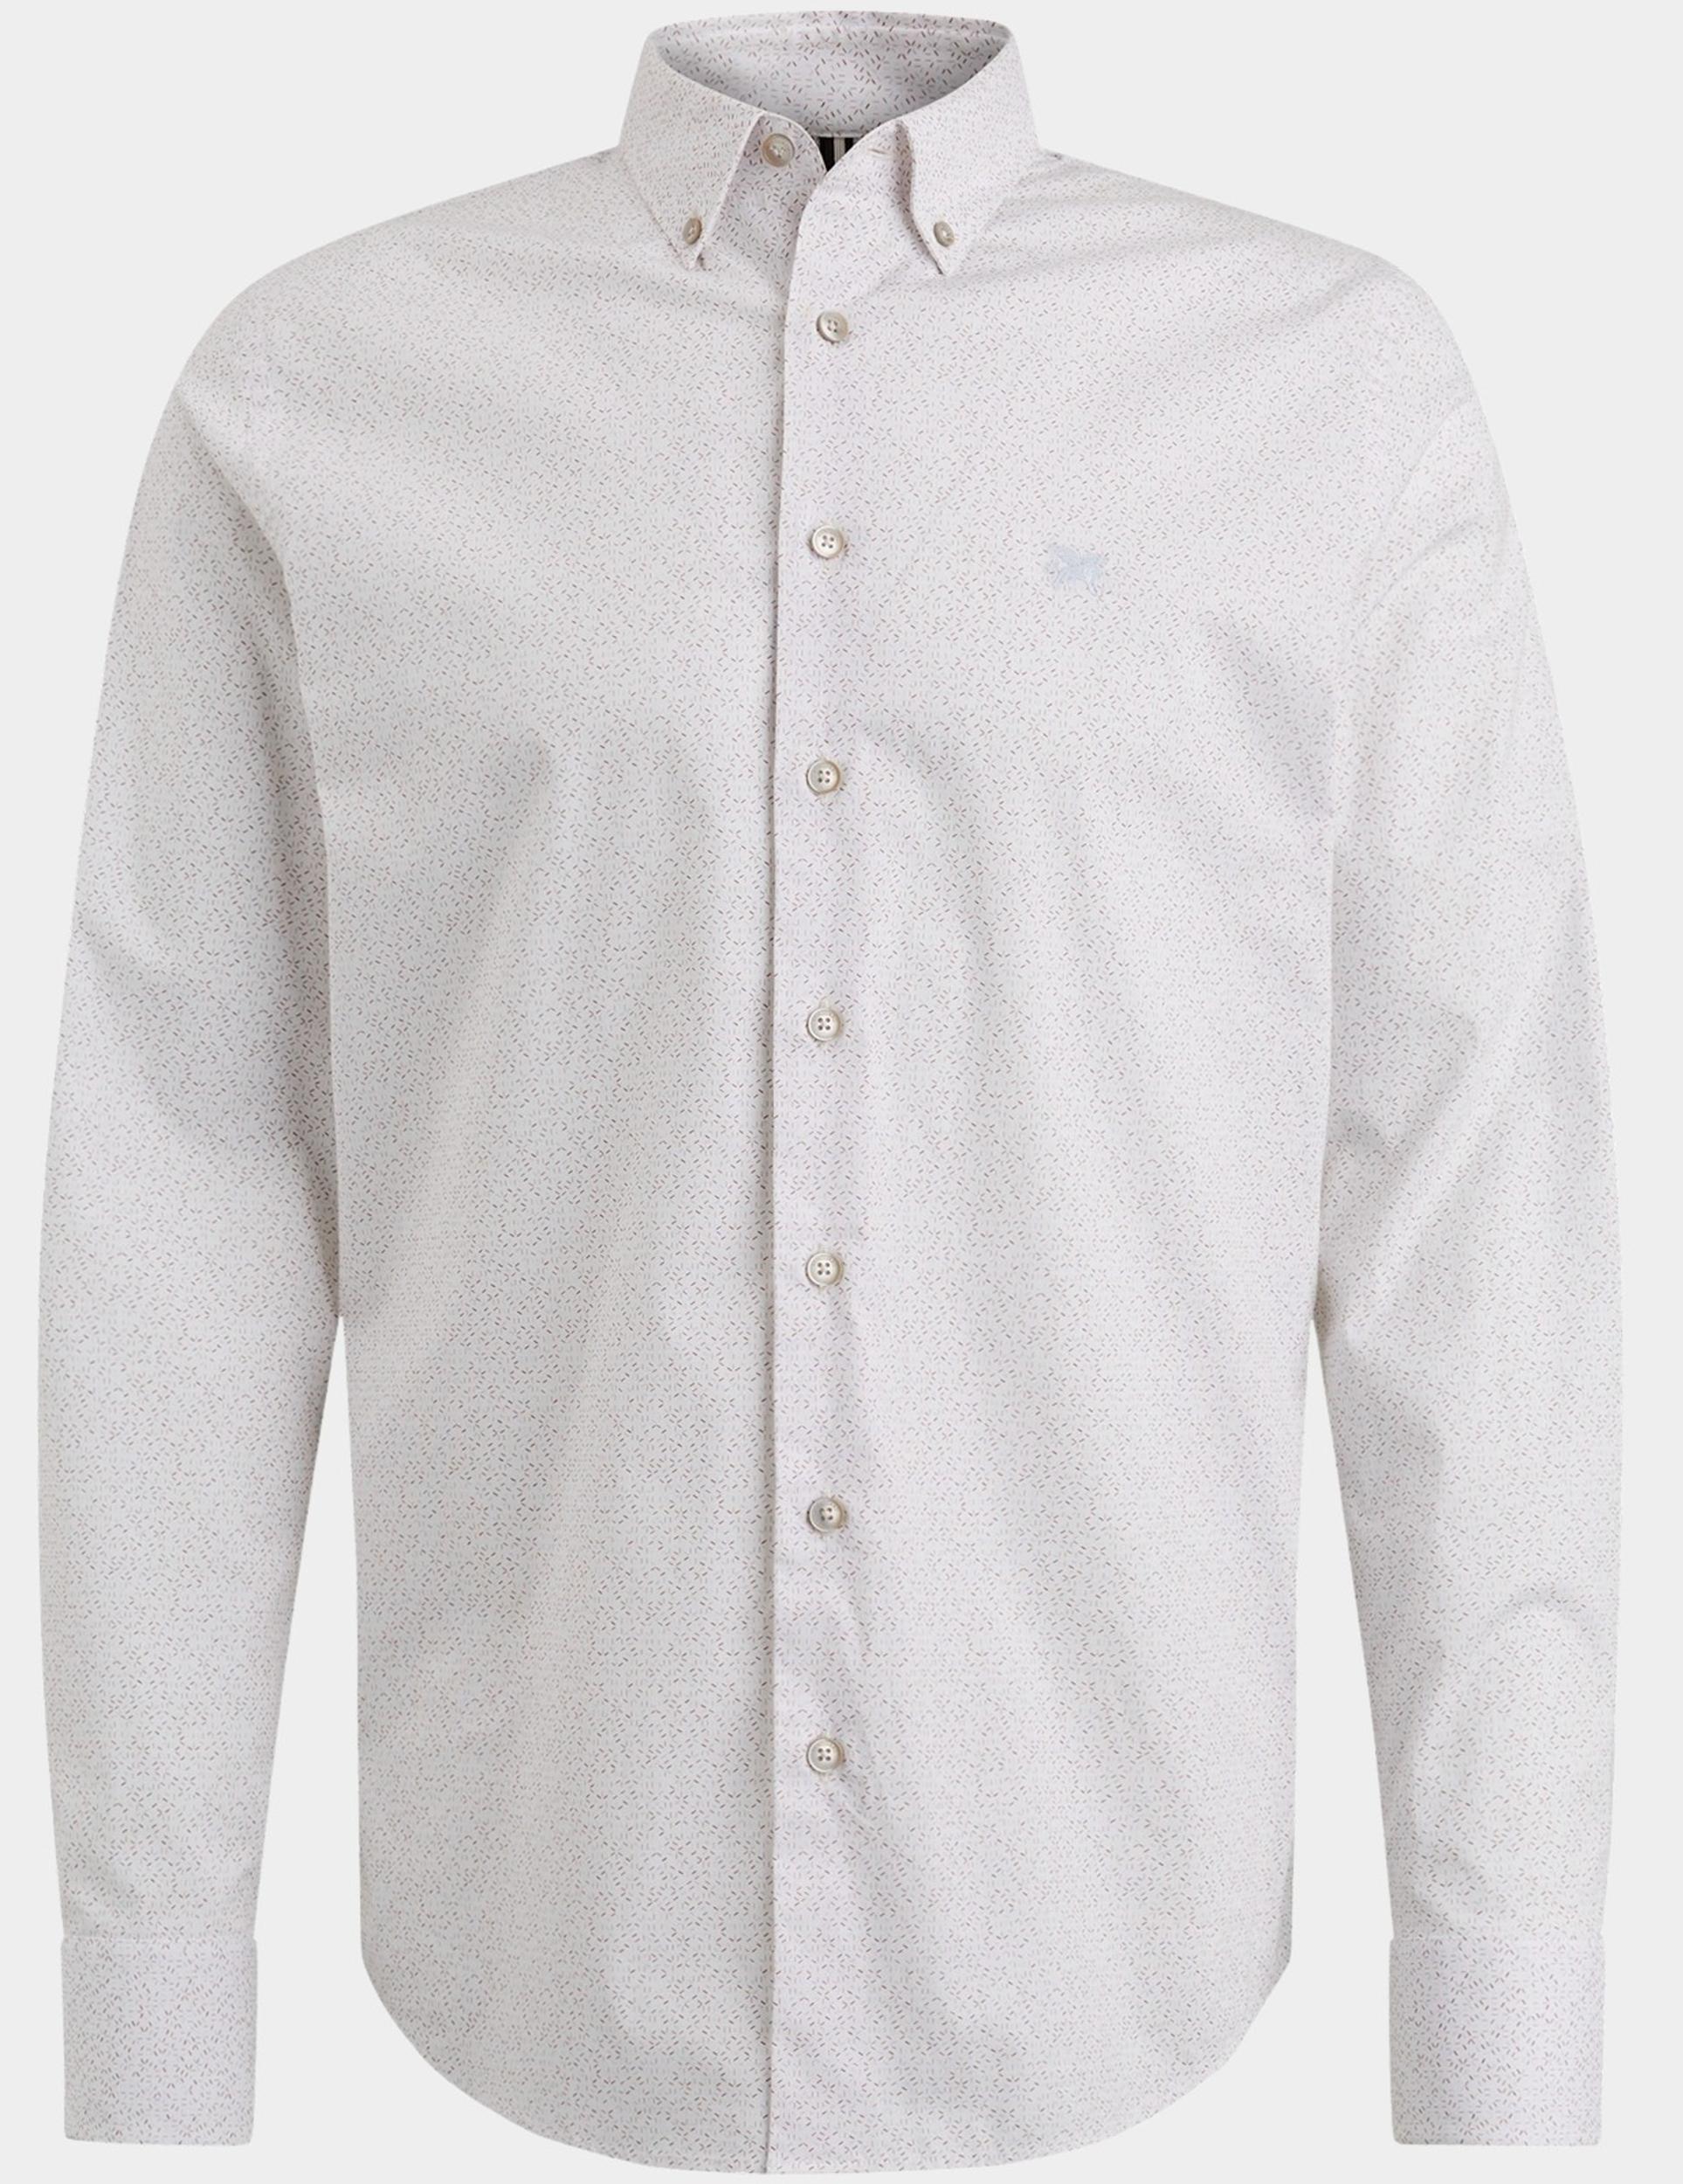 Vanguard Casual hemd lange mouw Wit Long Sleeve Shirt Print on po VSI2402206/7149